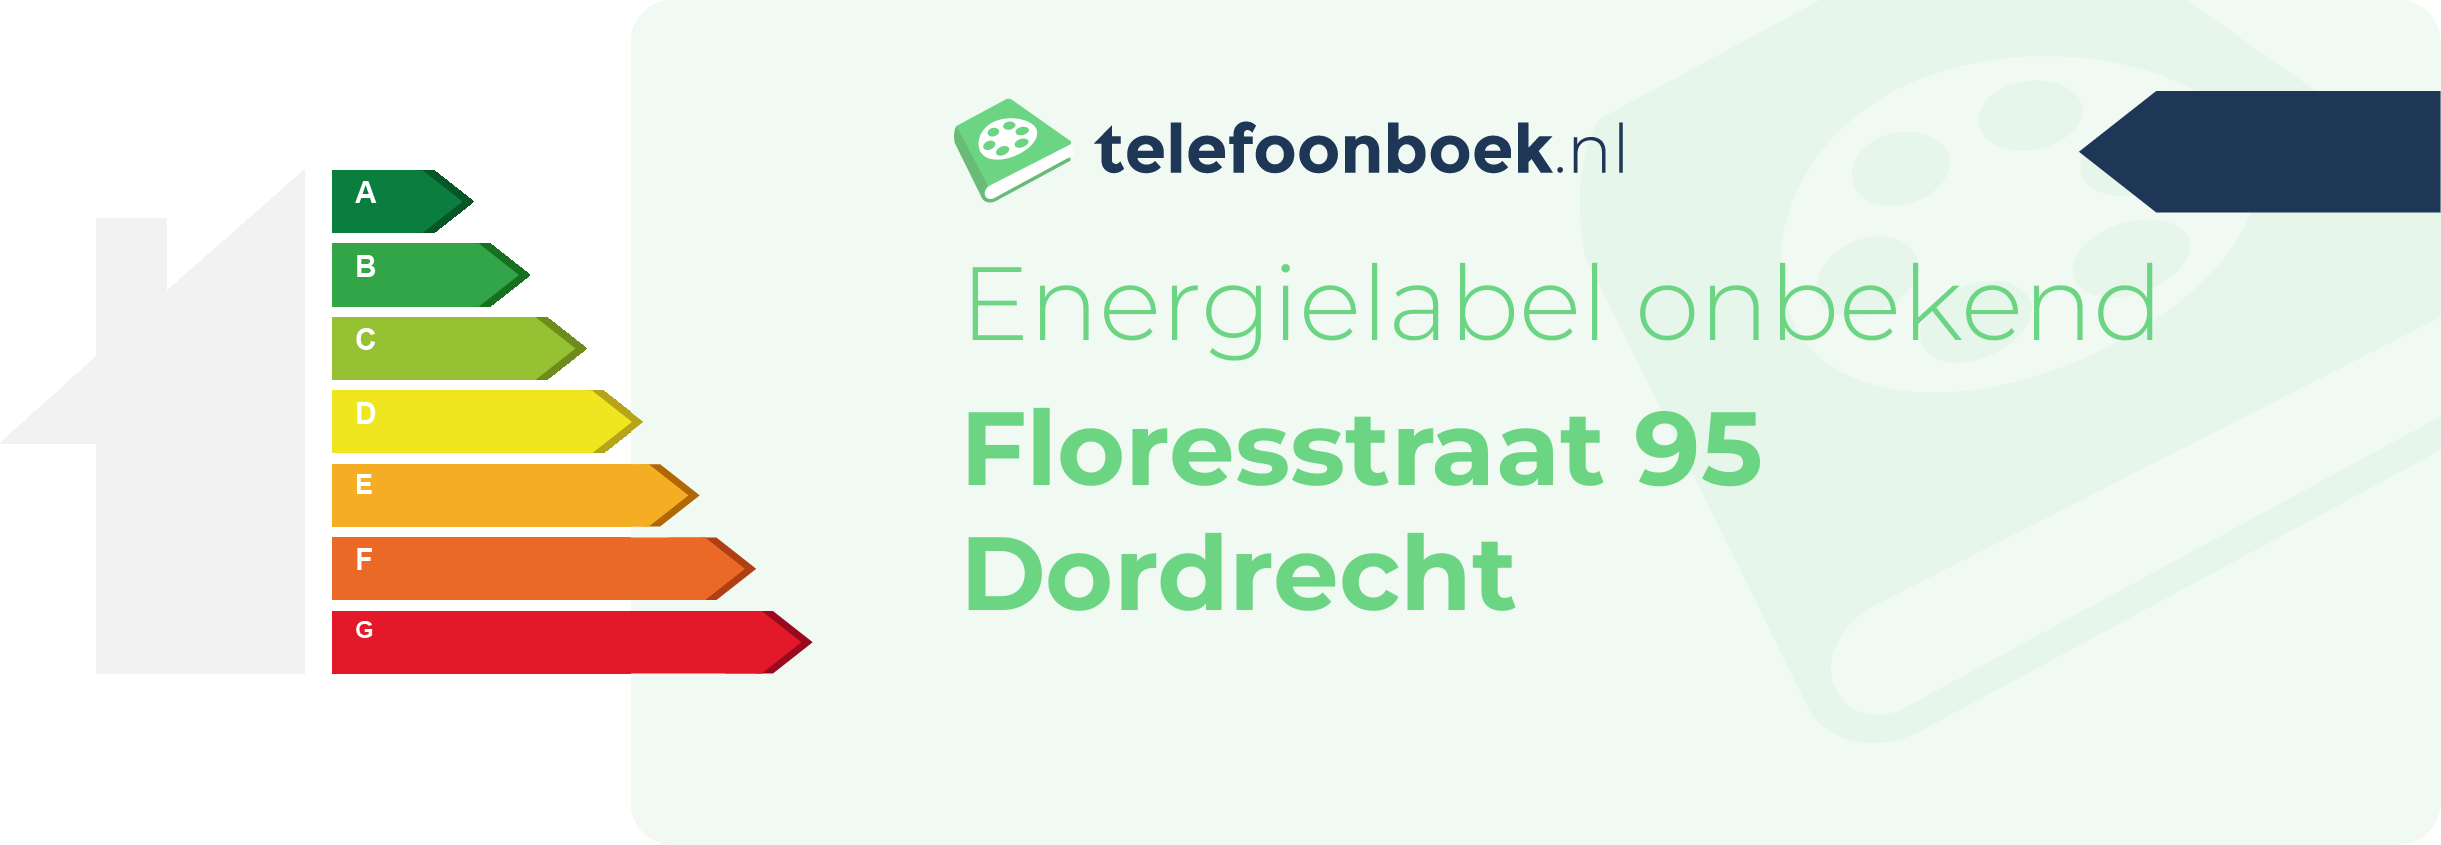 Energielabel Floresstraat 95 Dordrecht